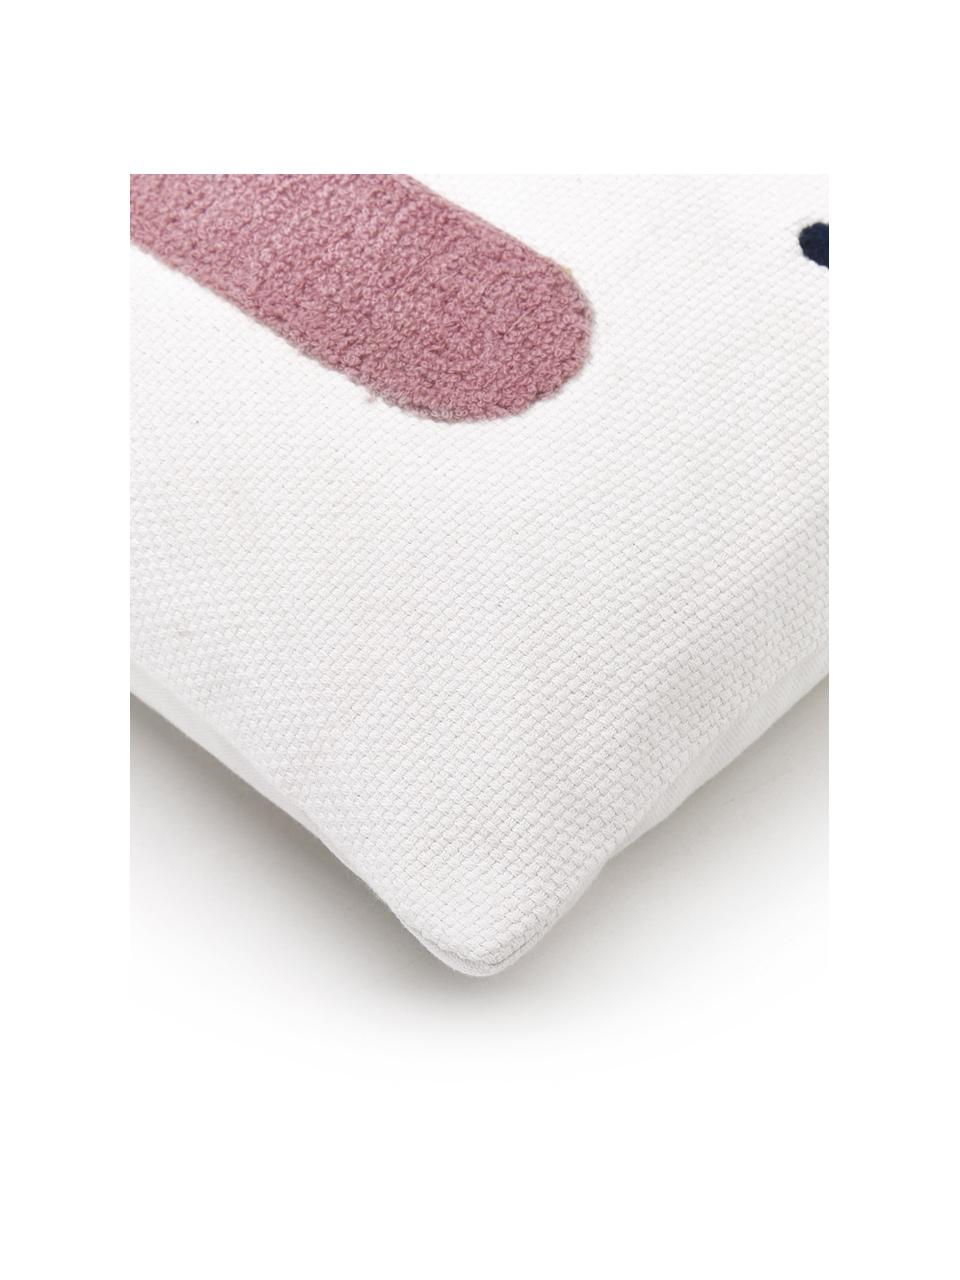 Kissenhülle Adin mit abstrakter Verzierung, Baumwolle, Vorderseite: MehrfarbigRückseite: Weiß, 45 x 45 cm